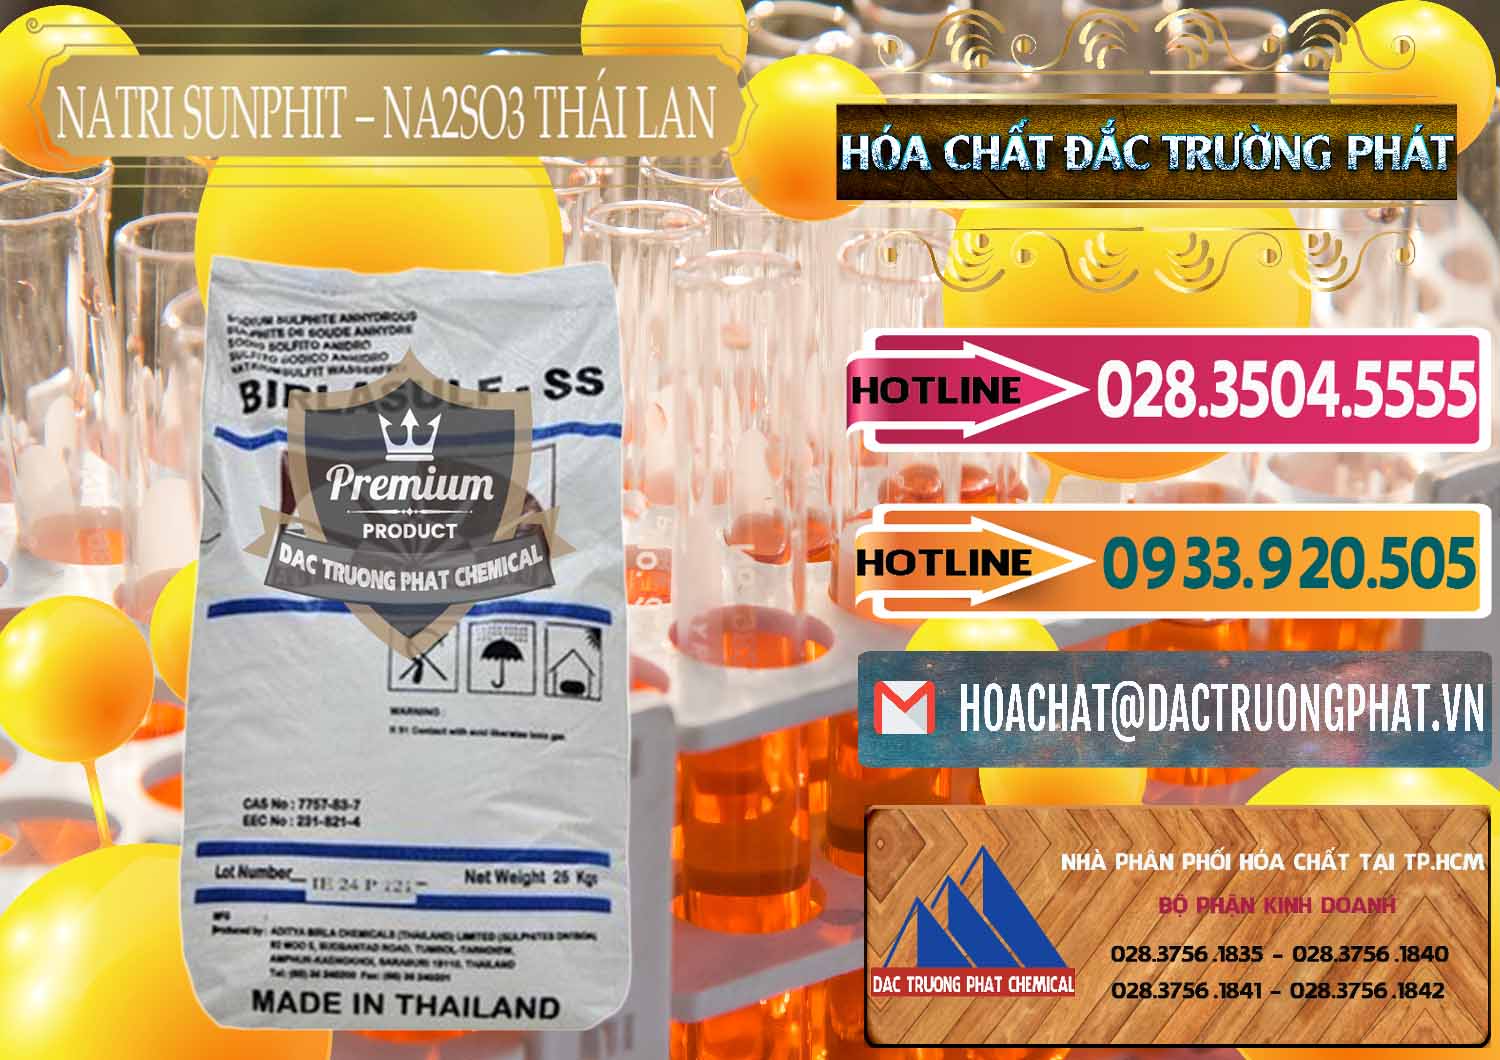 Cty bán ( cung cấp ) Natri Sunphit - NA2SO3 Thái Lan - 0105 - Nhà phân phối - cung cấp hóa chất tại TP.HCM - dactruongphat.vn